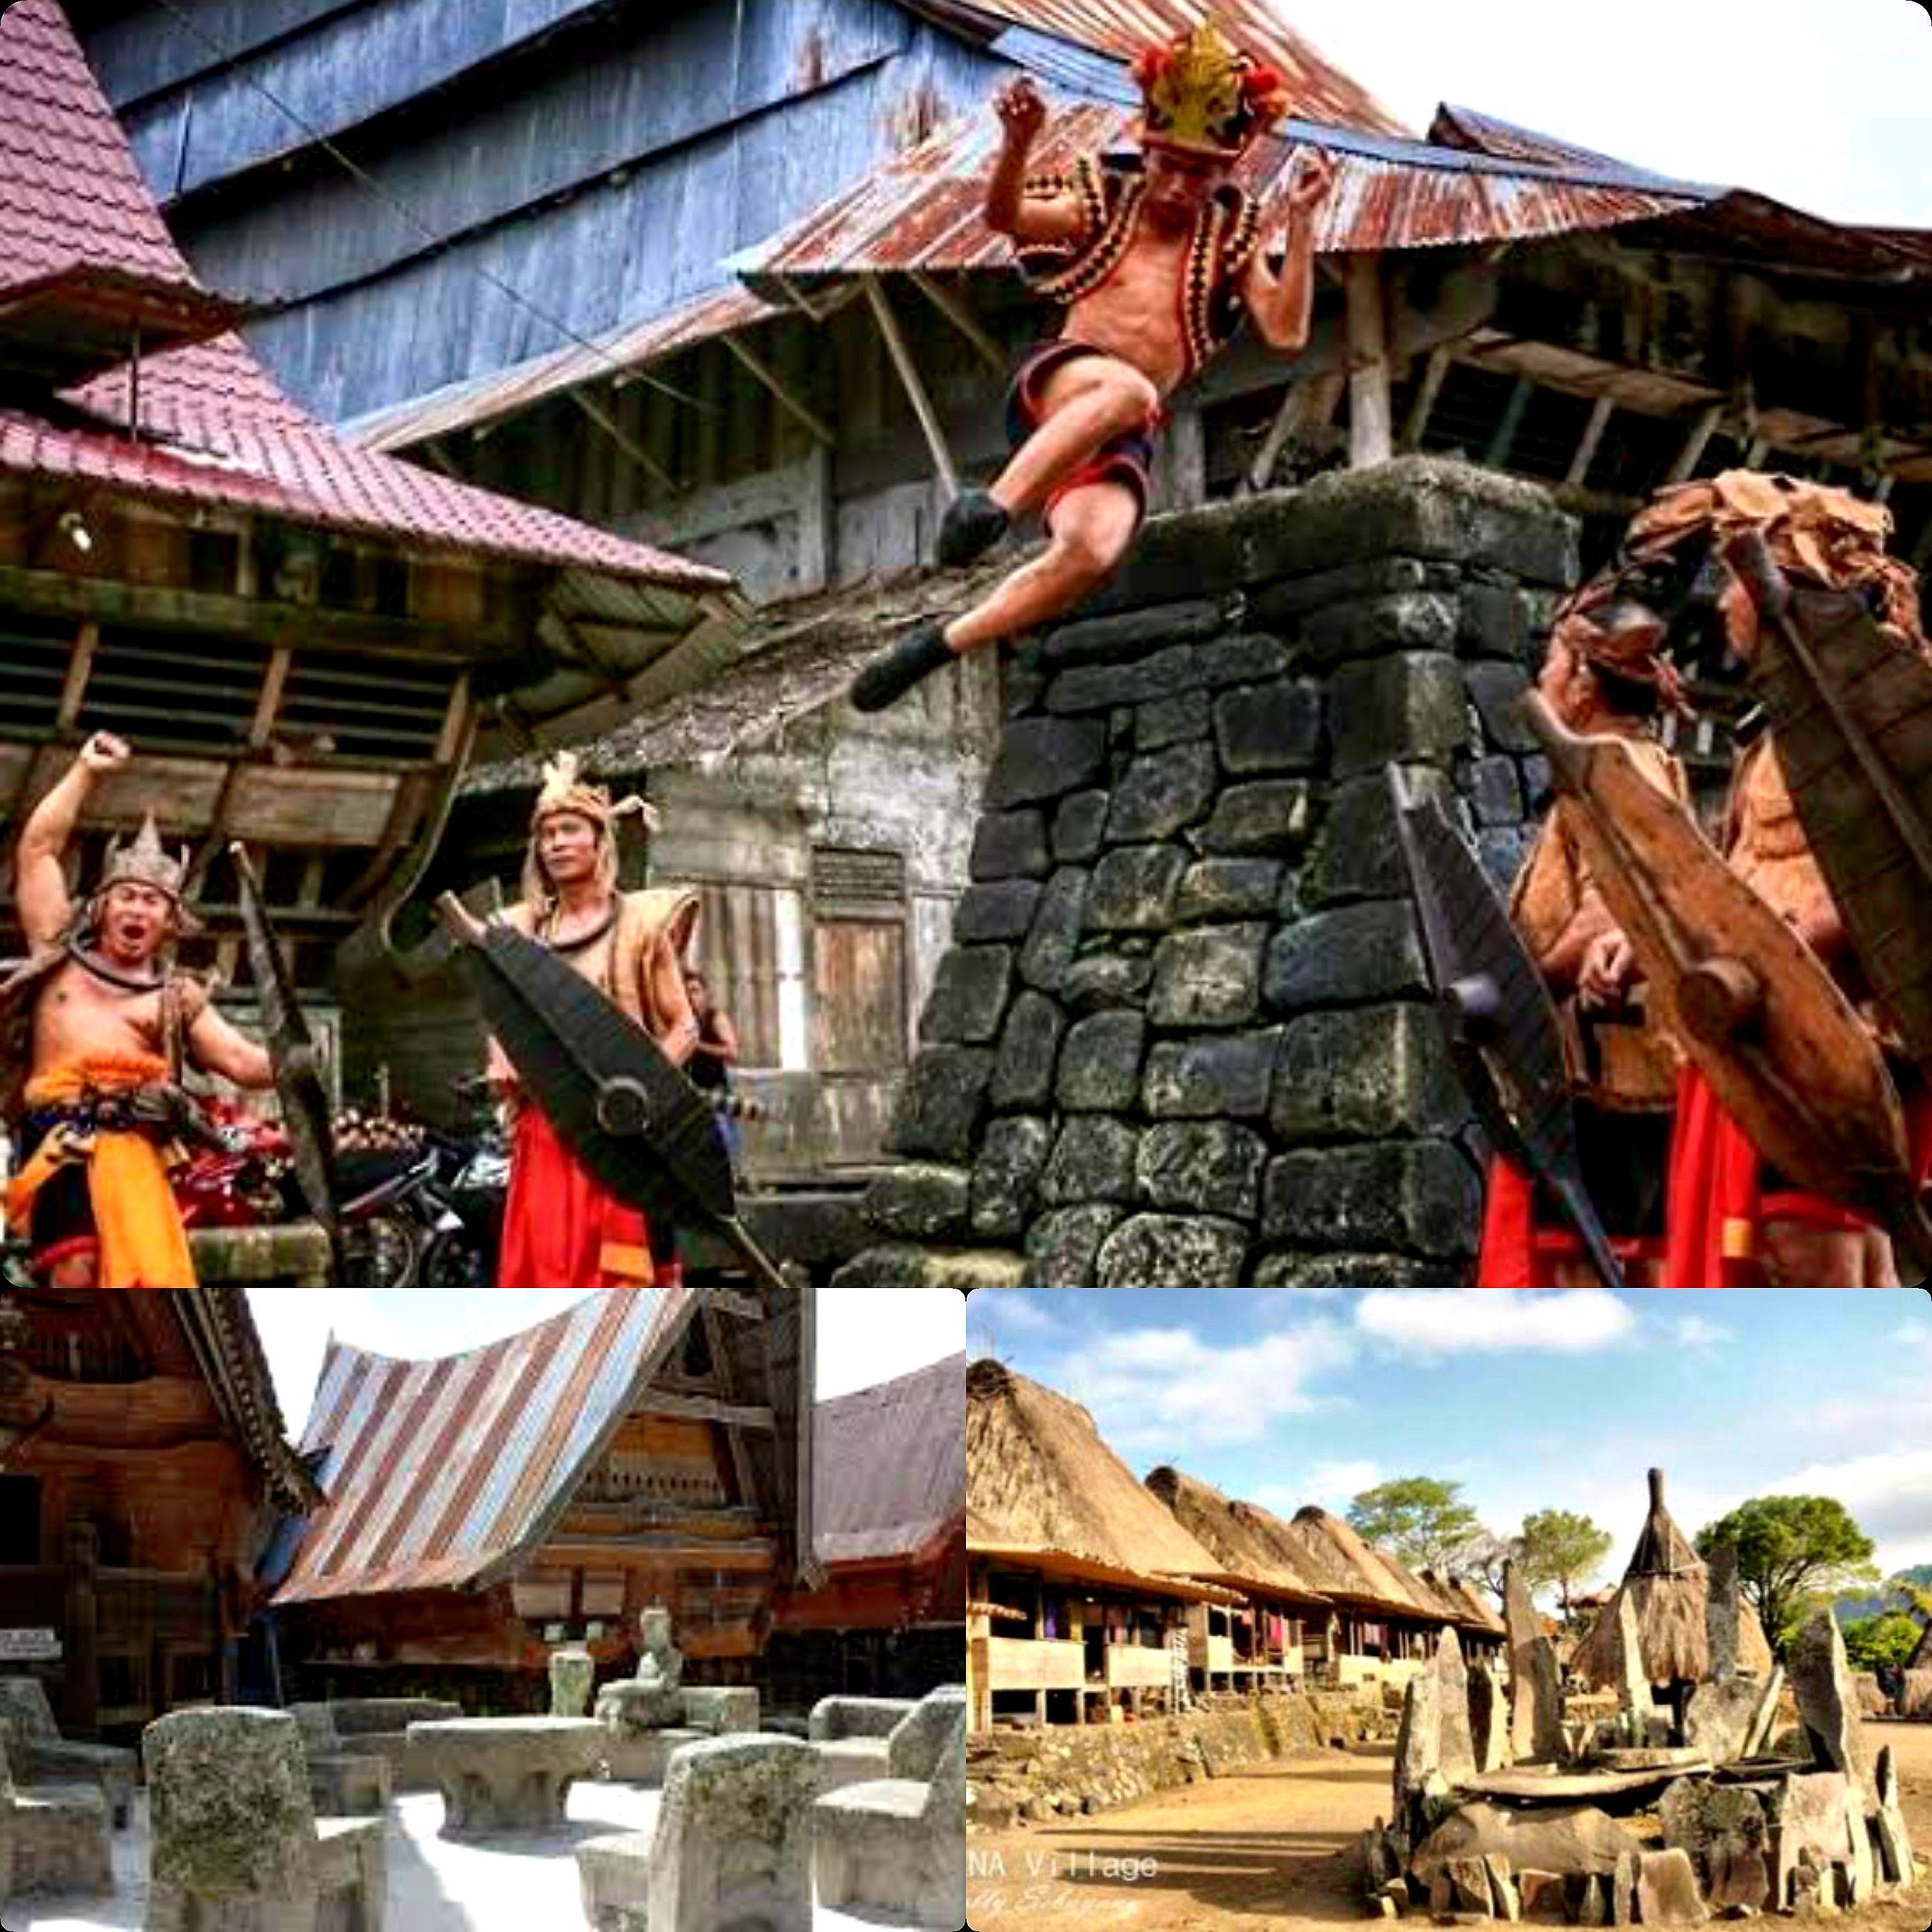 Bikin Kagum! 6 Desa Wisata Megalitikum. Saksi dan Bukti Peninggalan Jaman Batu Besar di Indonesia